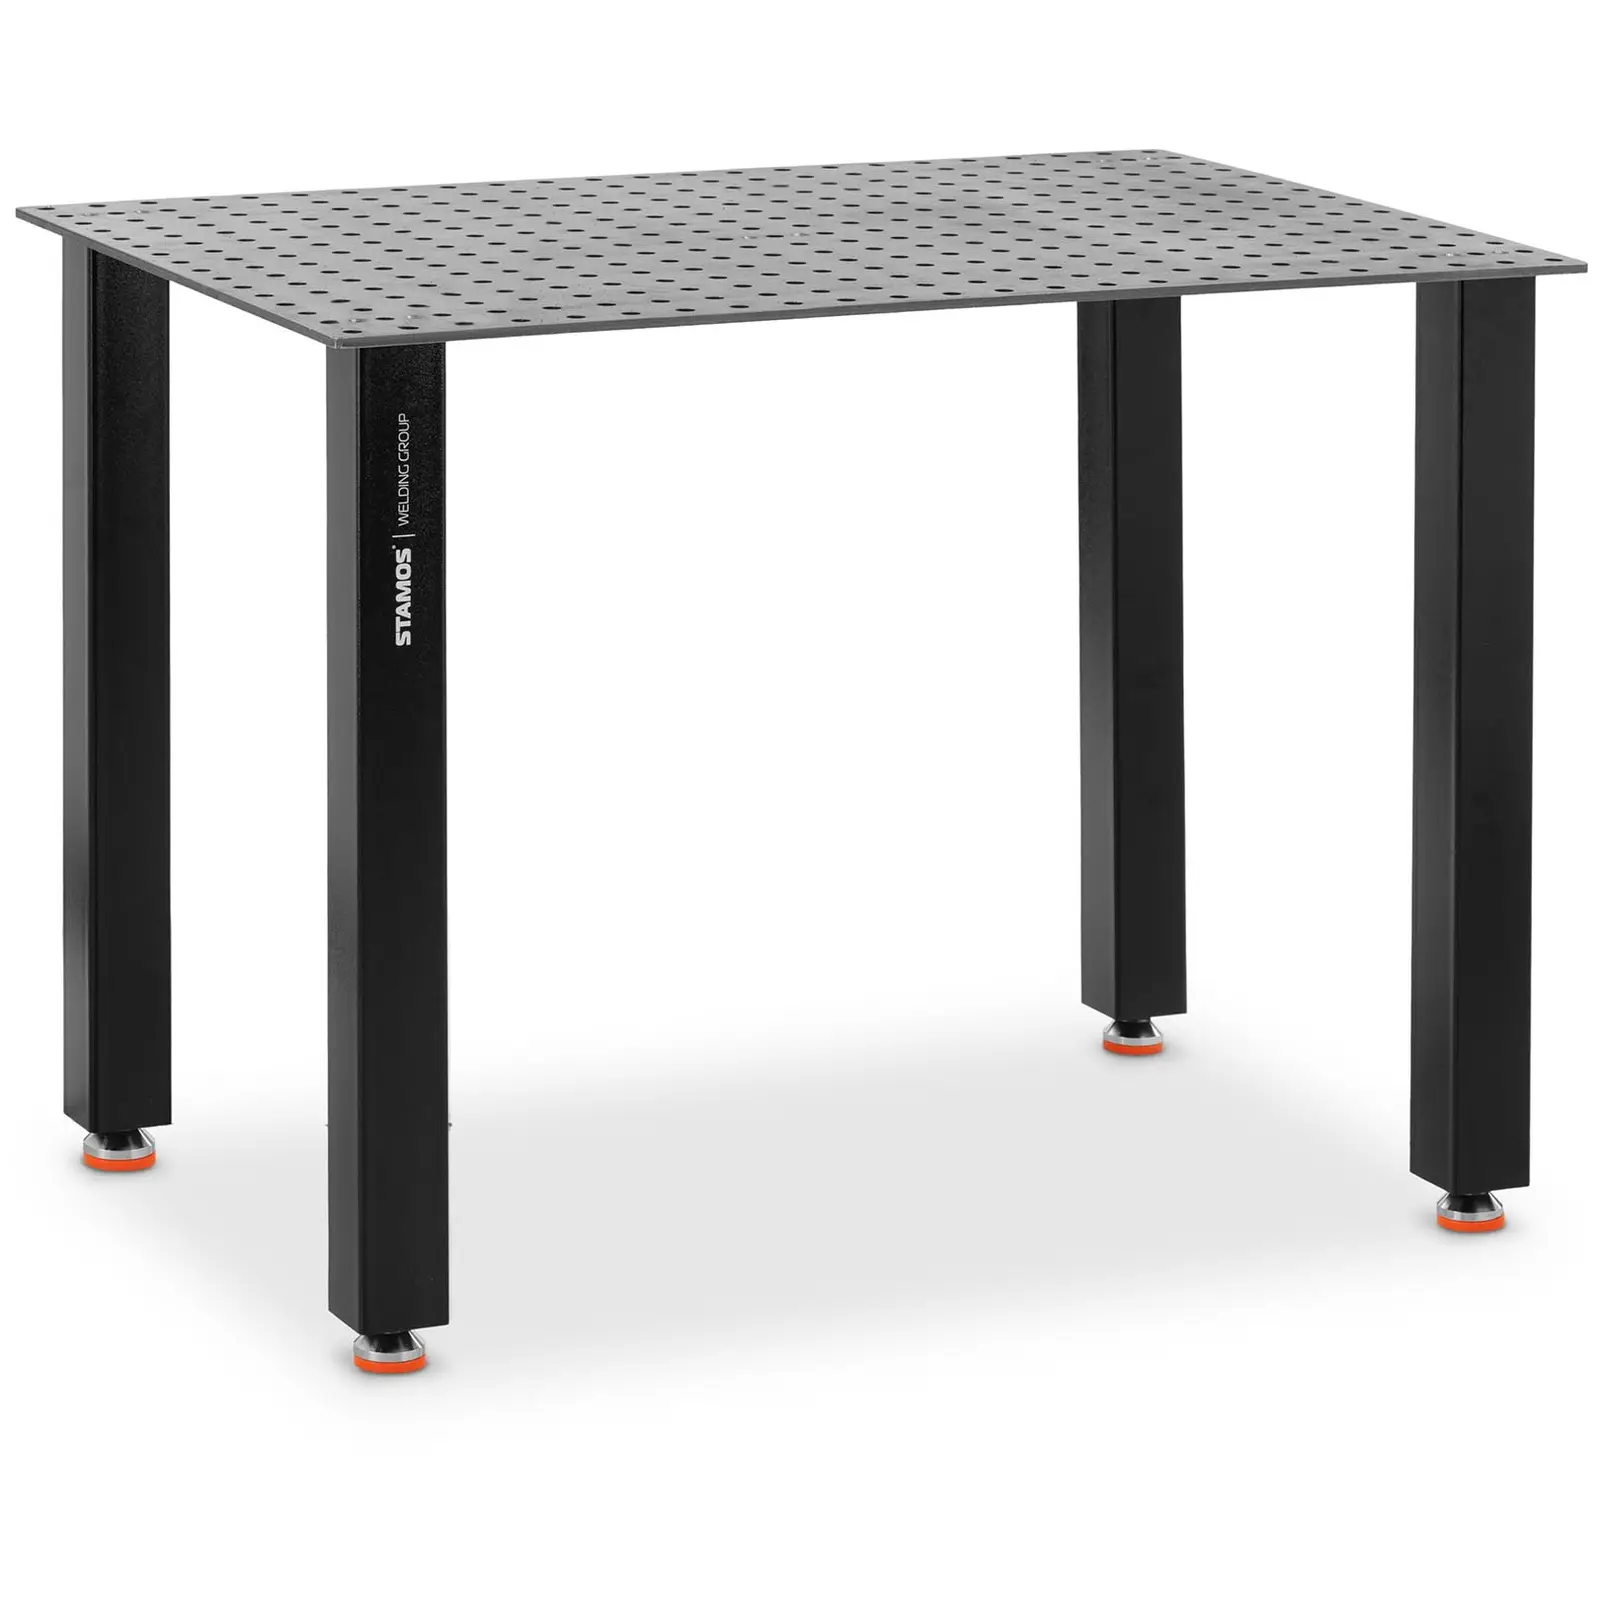 Τραπέζι συγκόλλησης - 100 kg - 120 x 80 cm